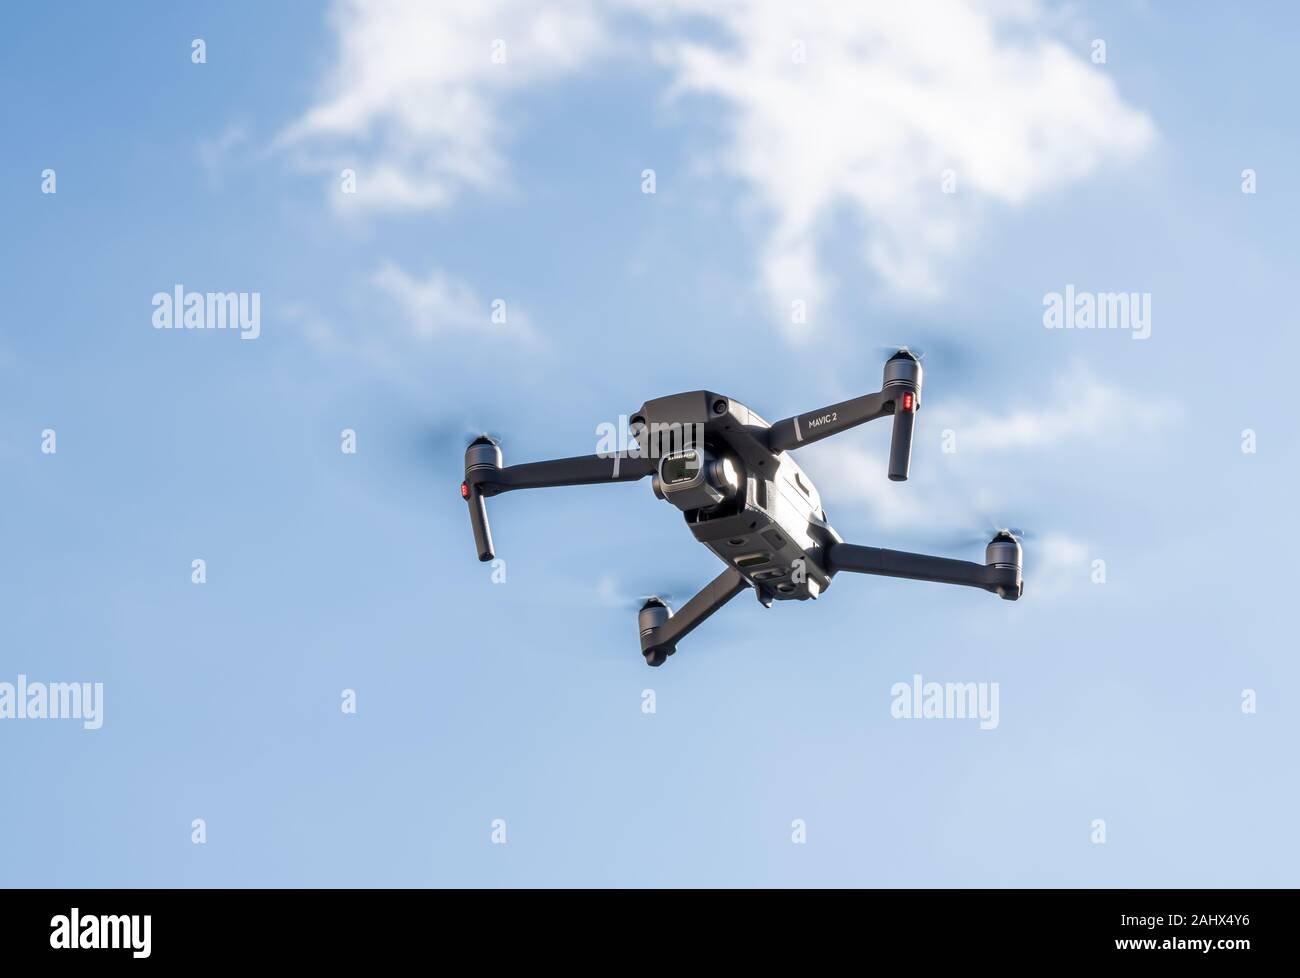 En Morgantown, WV - 1 de enero de 2020: DJI Mavic 2 Pro quadcopter o drone flotando en el cielo azul brillante Foto de stock